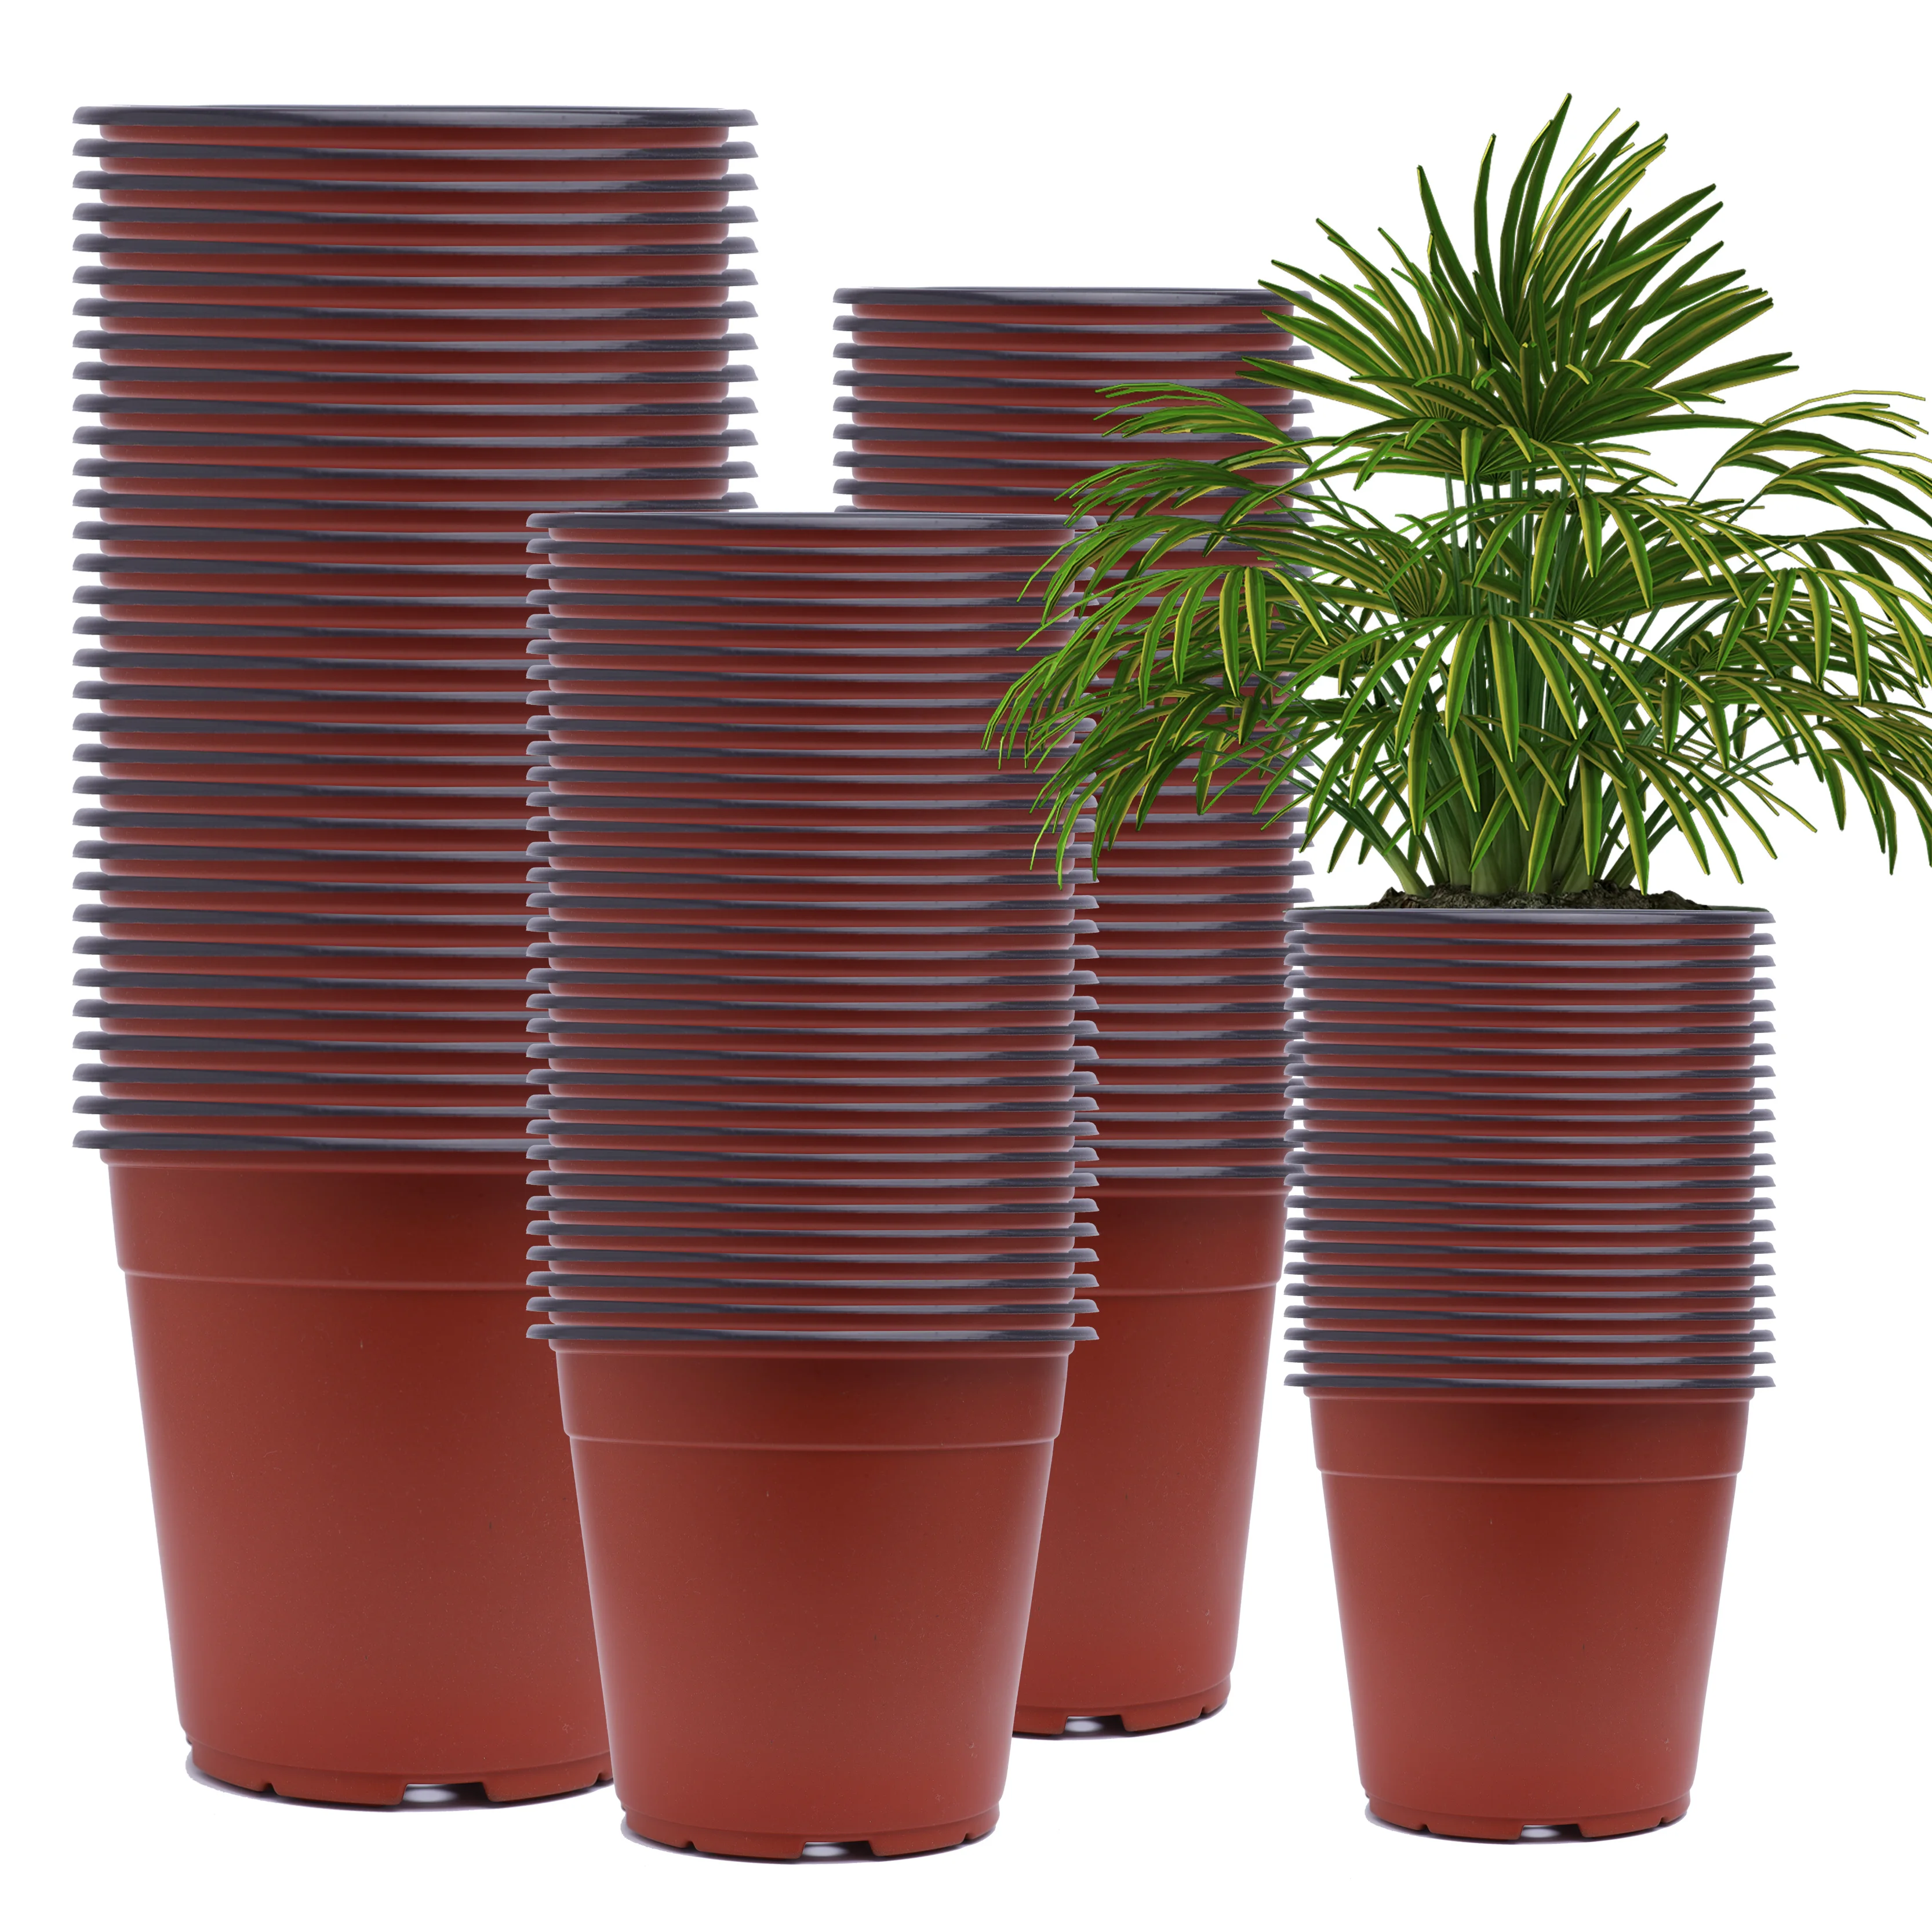 

Cheap plastic flower pots Garden Nursery Pots Plant Flowerpot Seedlings Planter Containers Home Decor Various Sizes